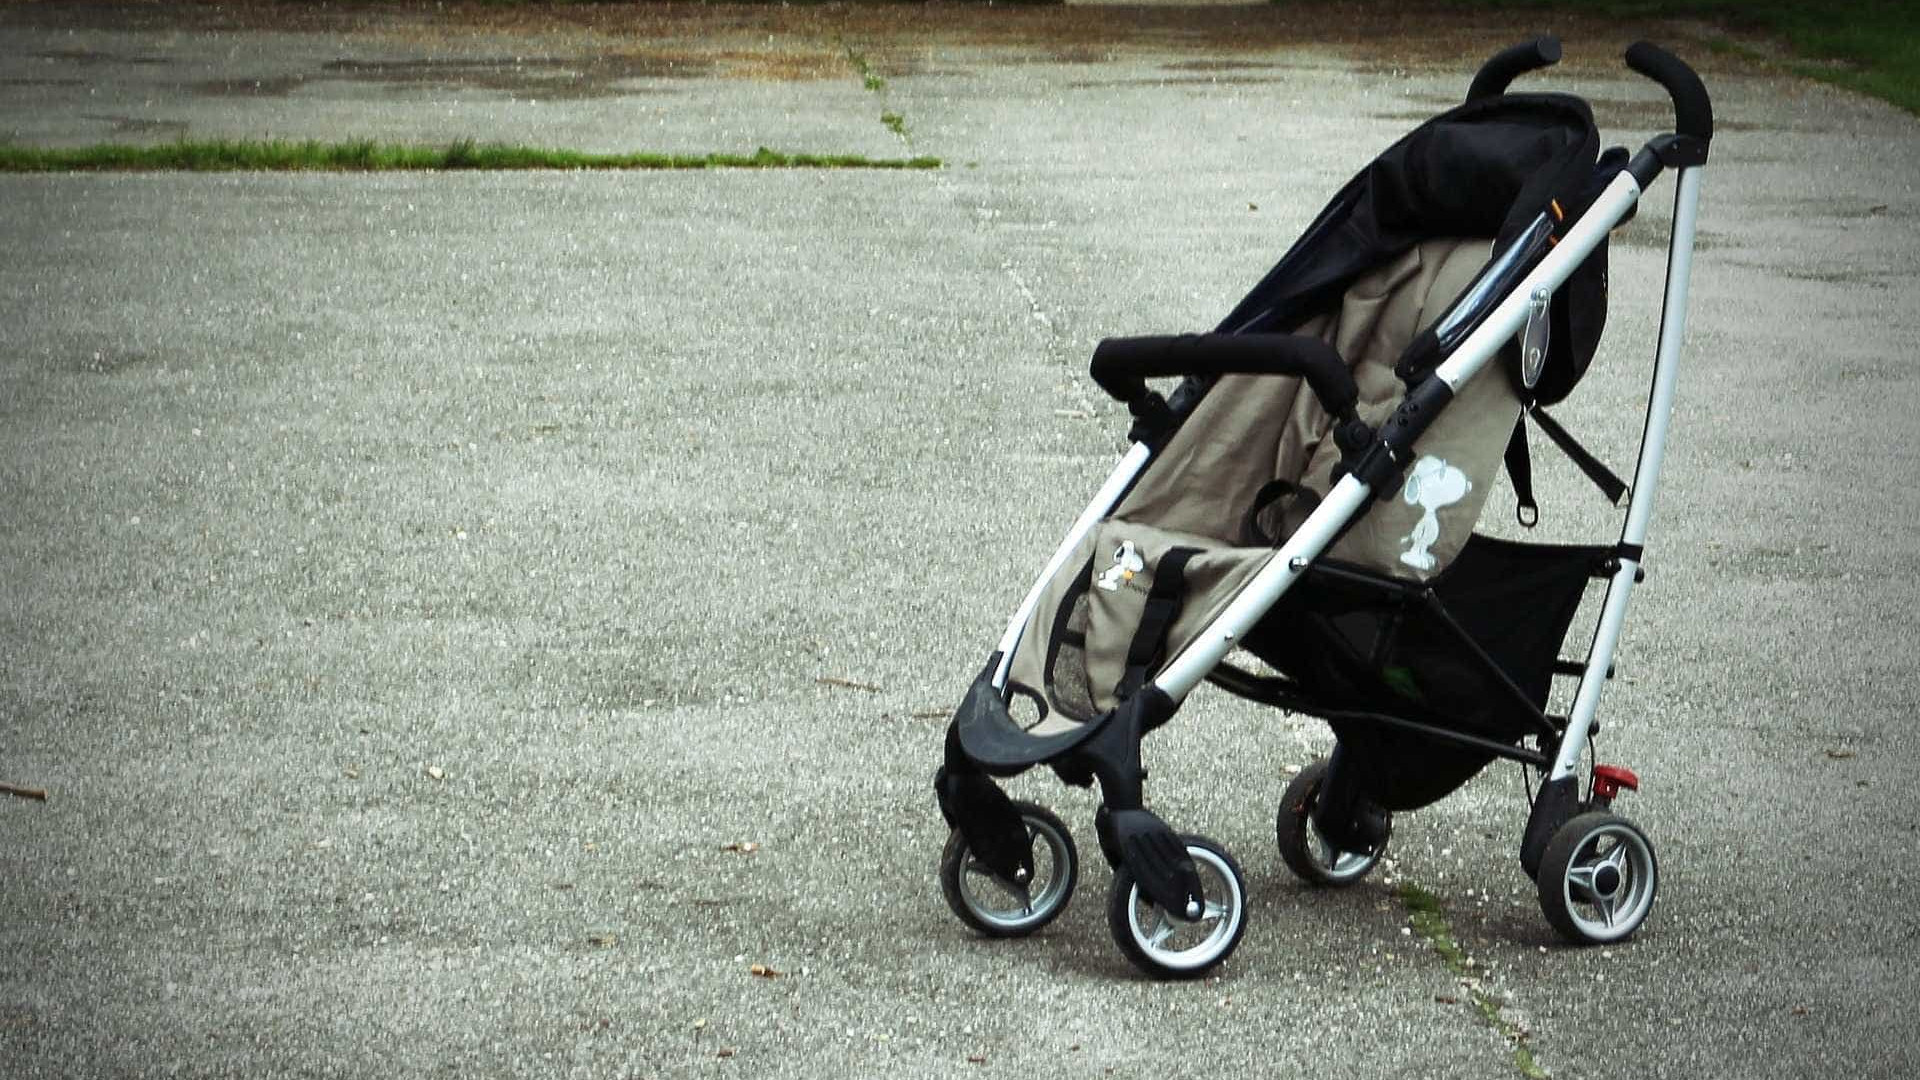 Suspeito se esconde em carrinho de bebê em tentativa de roubo